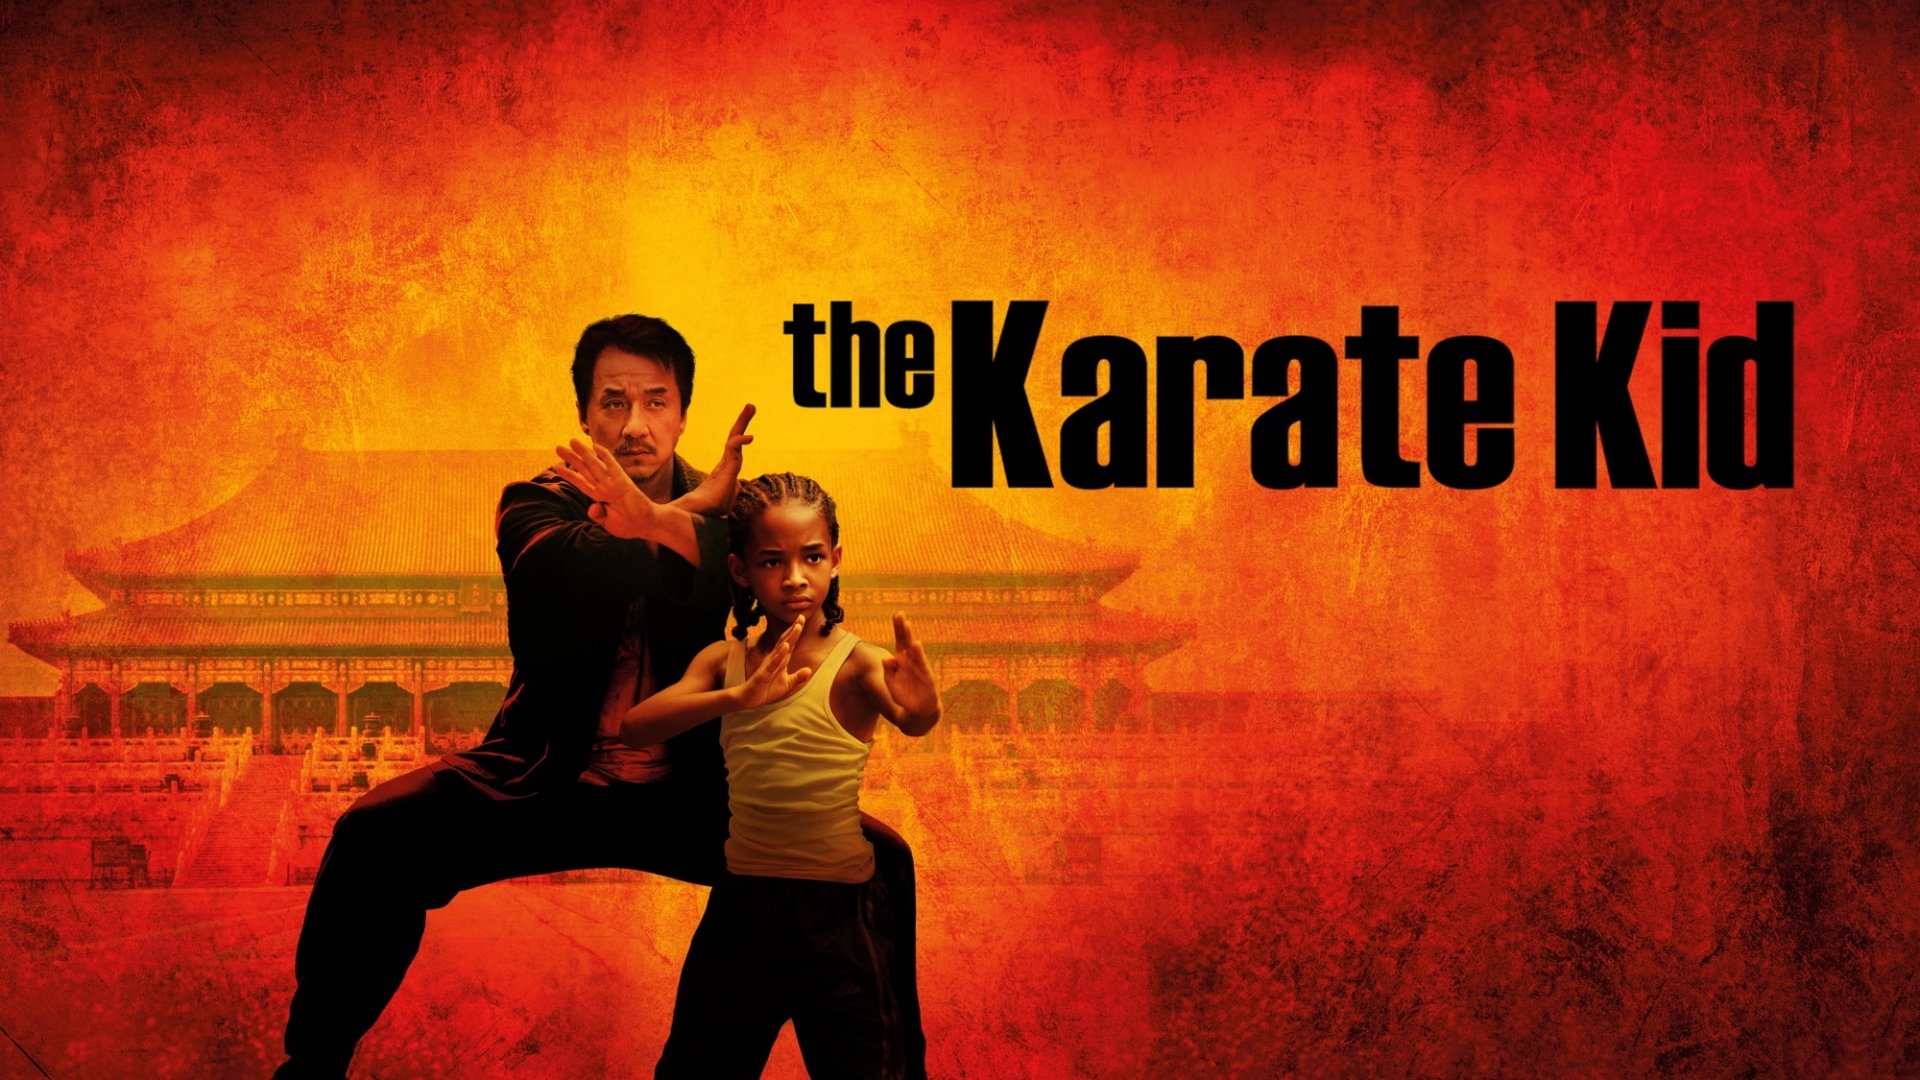 karate kid full movie download english